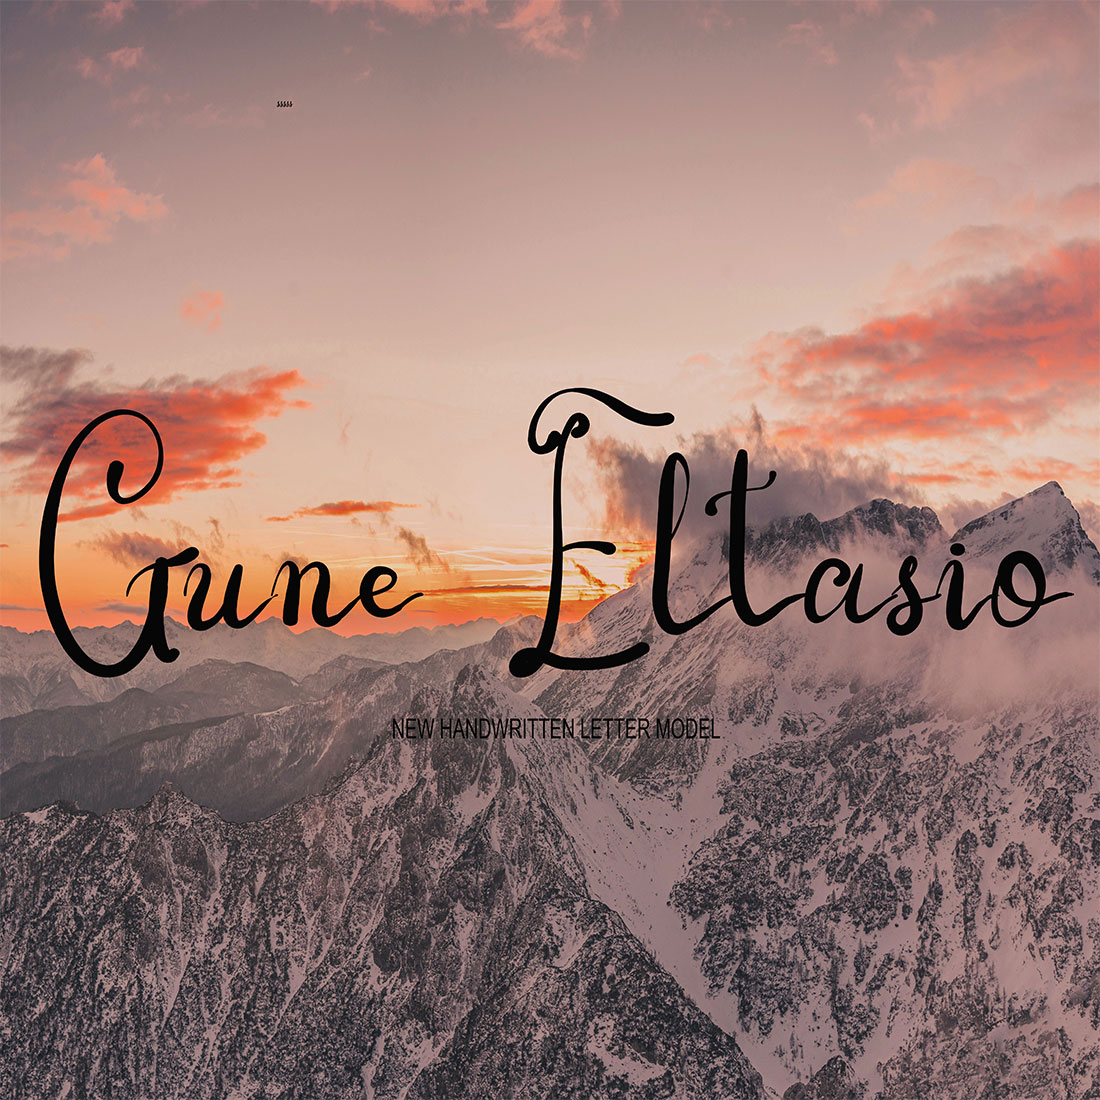 GUNE ELTASIO Font cover image.